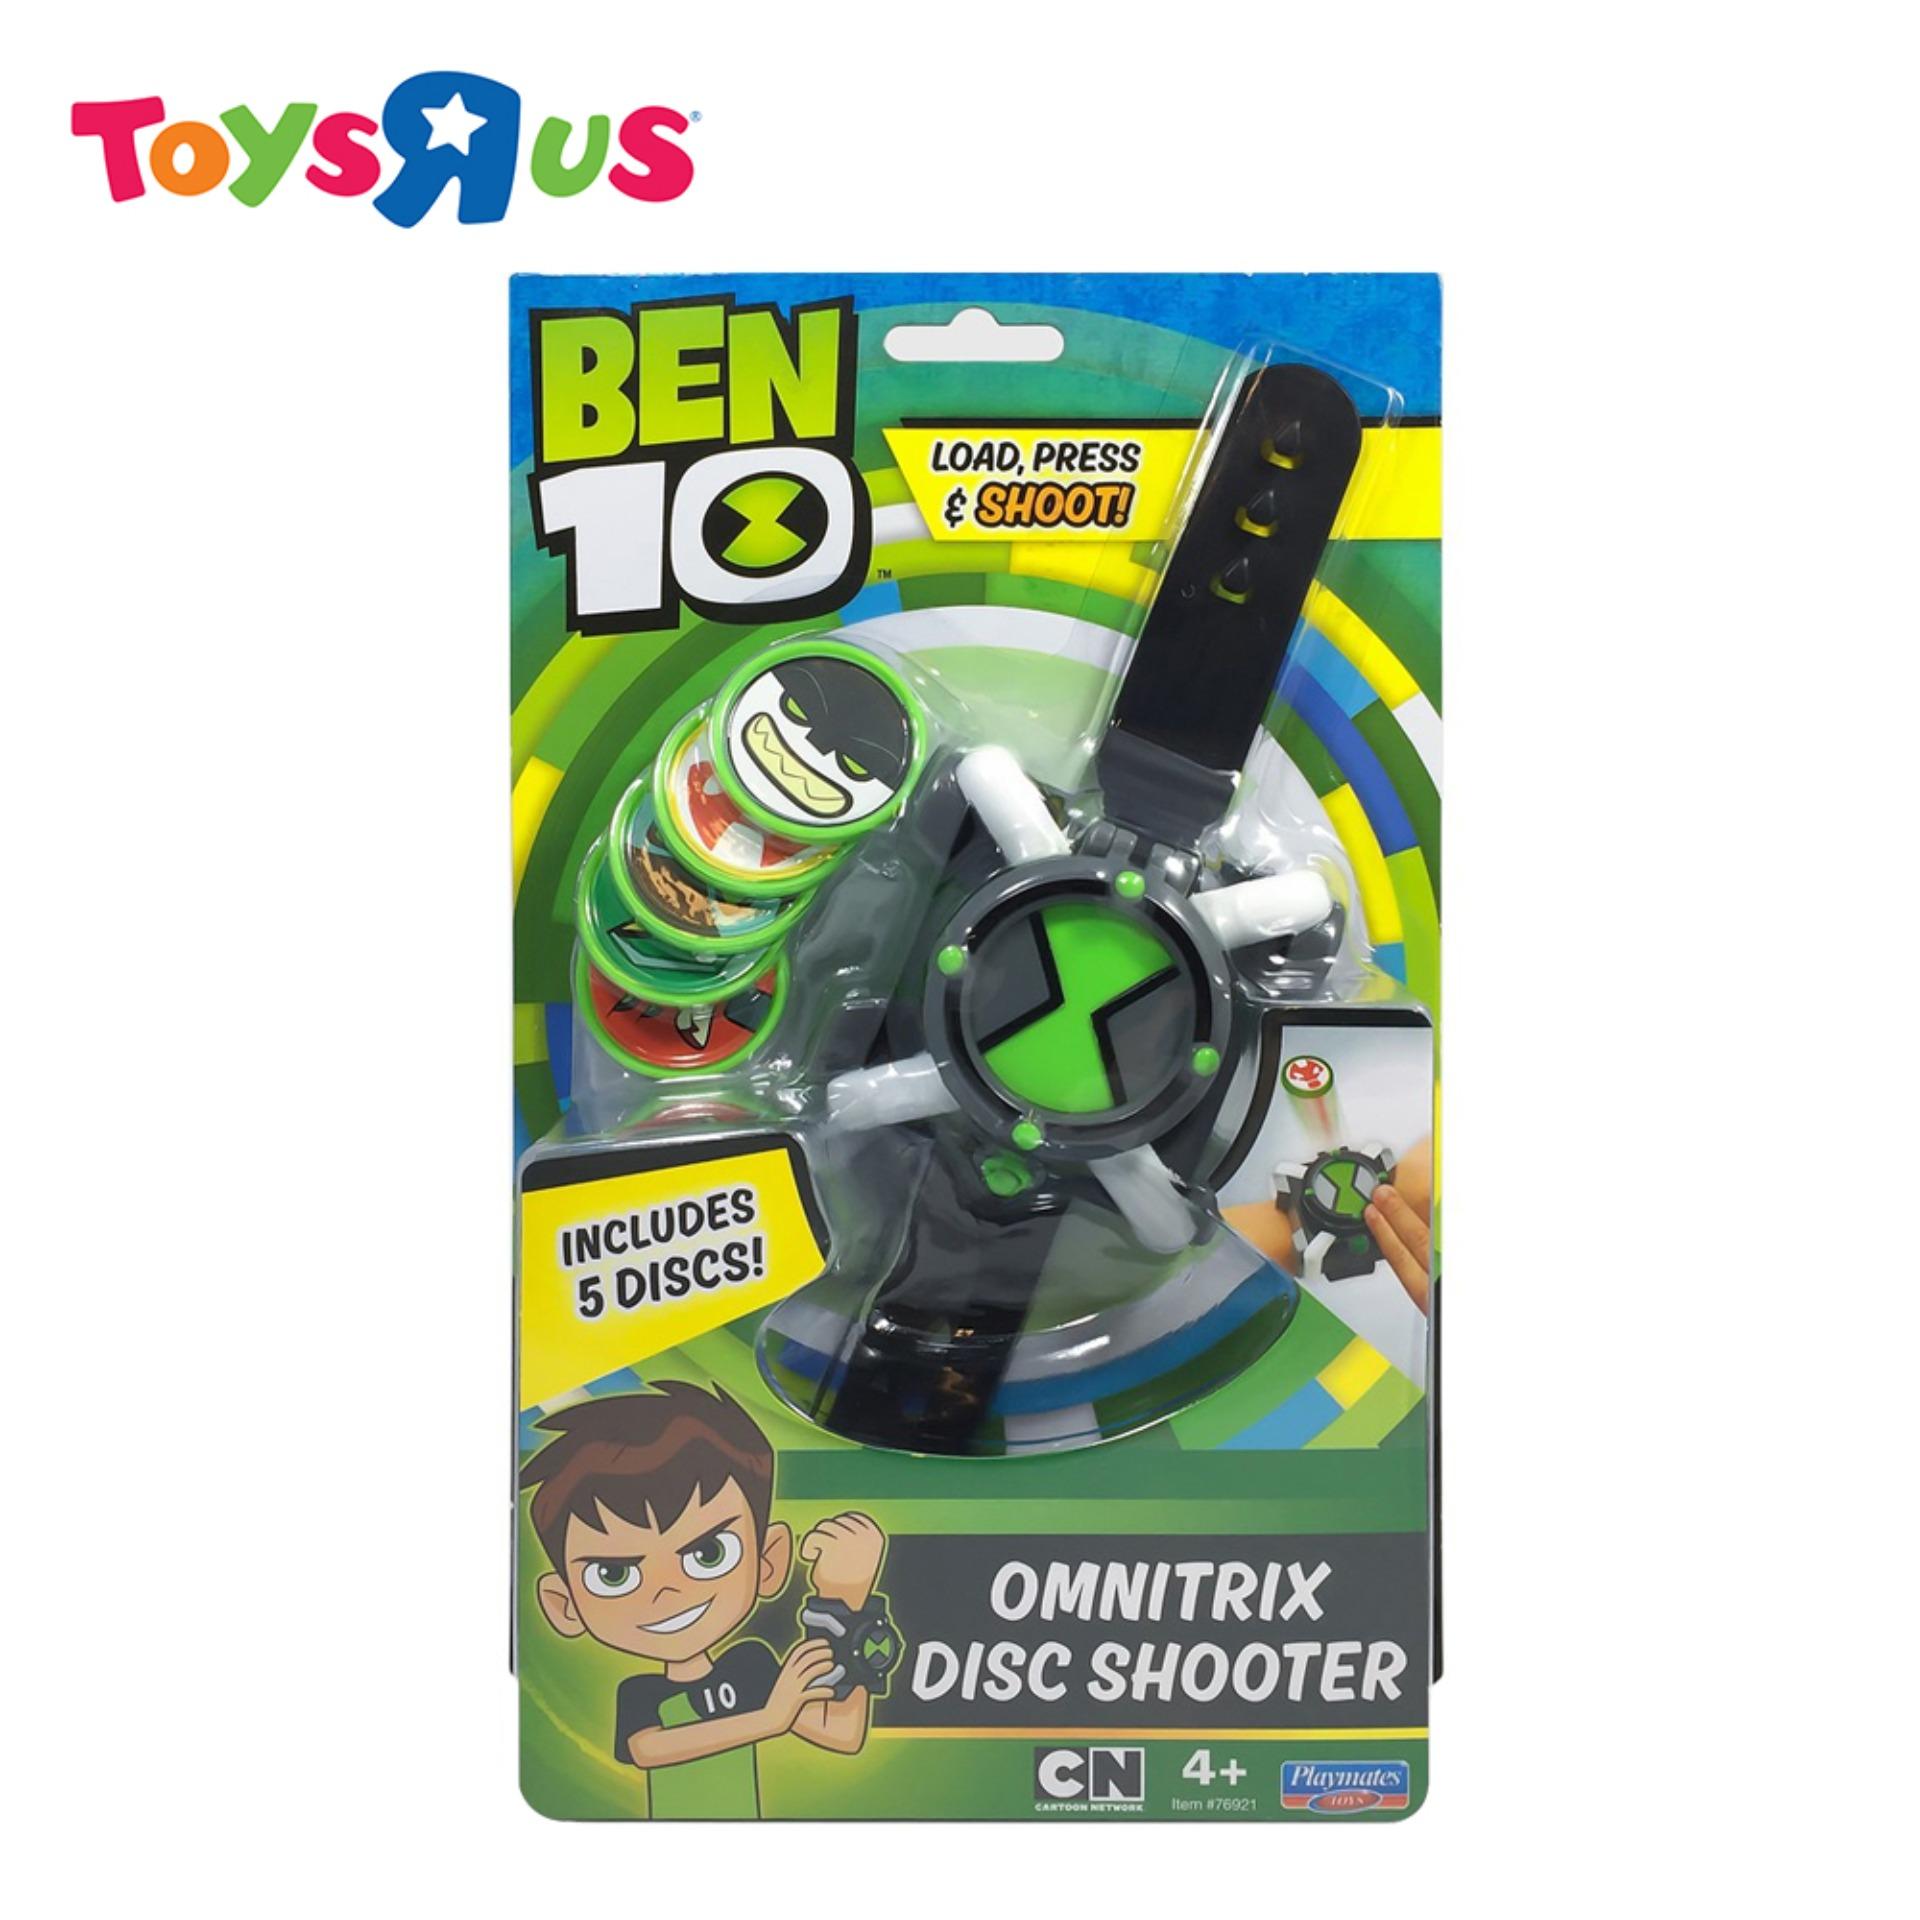 ben 10 omnitrix toys r us